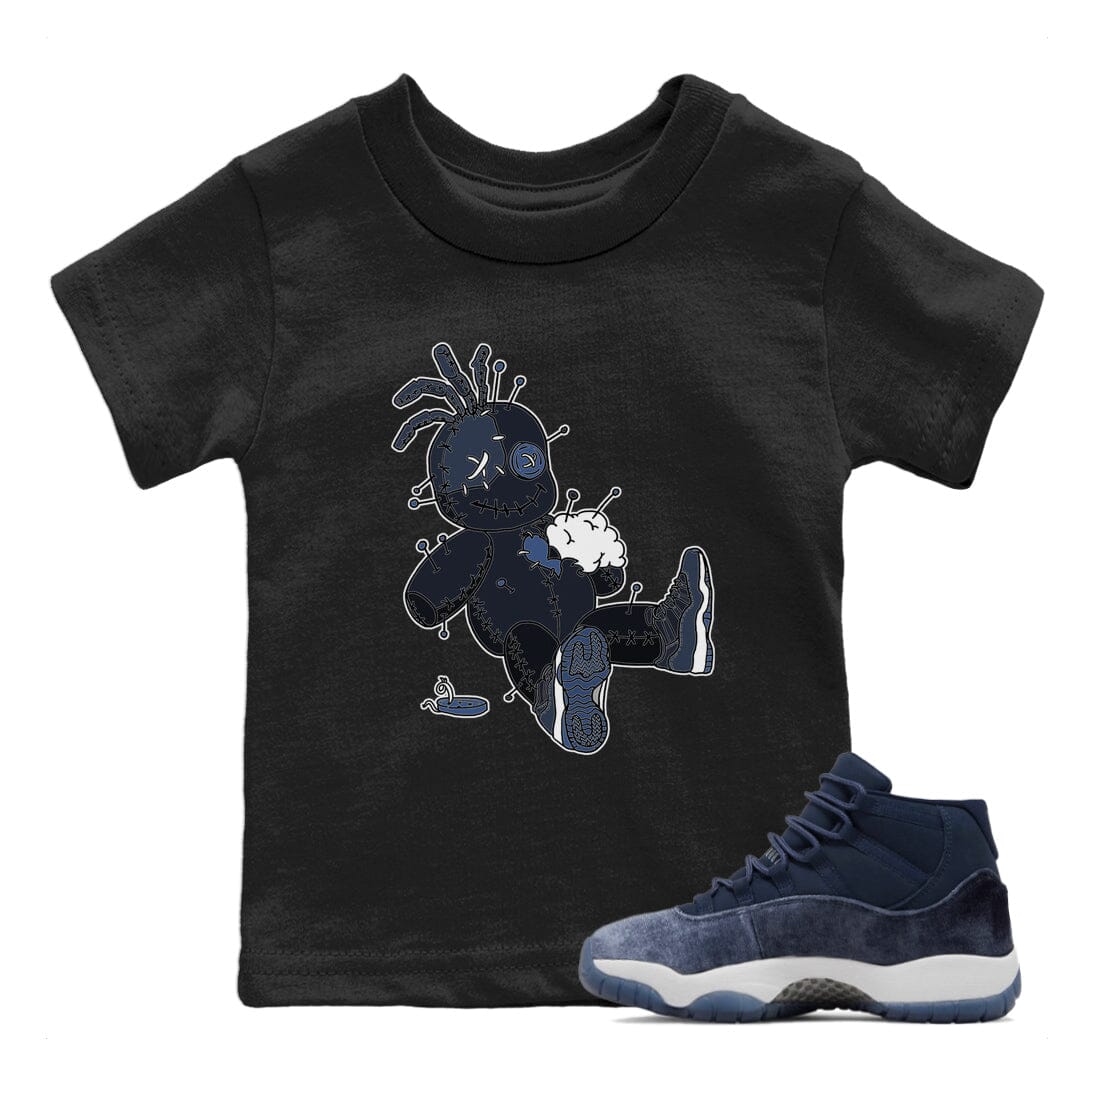 Jordan 11 Midnight Navy Sneaker Match Tees Voodoo Doll Sneaker Tees Jordan 11 Midnight Navy Sneaker Release Tees Kids Shirts